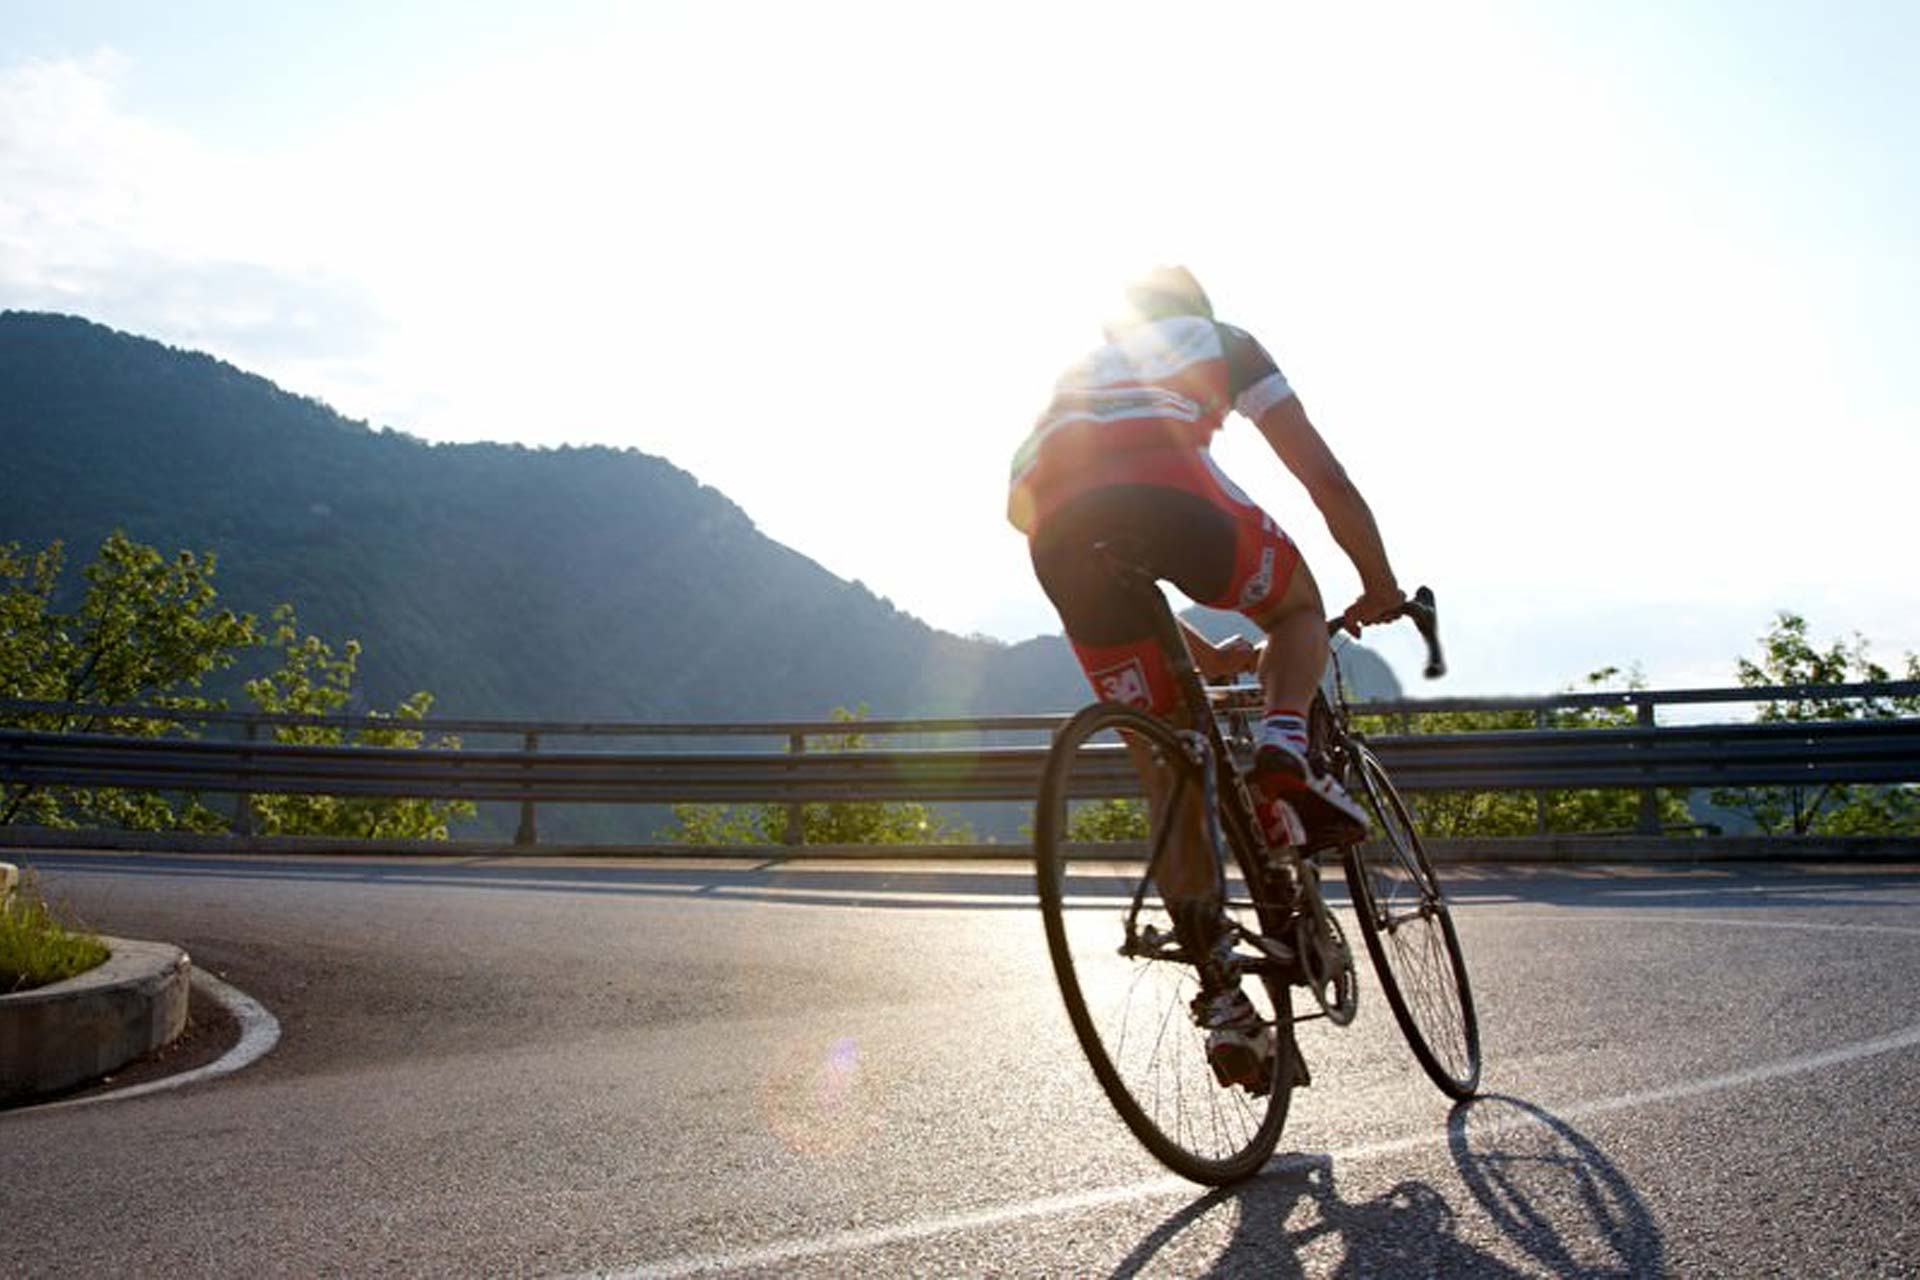 Das Bild zeigt einen Rennradfahrer einen Berg rauf fahren. Im Hintergrund sieht man ein paar Berge.